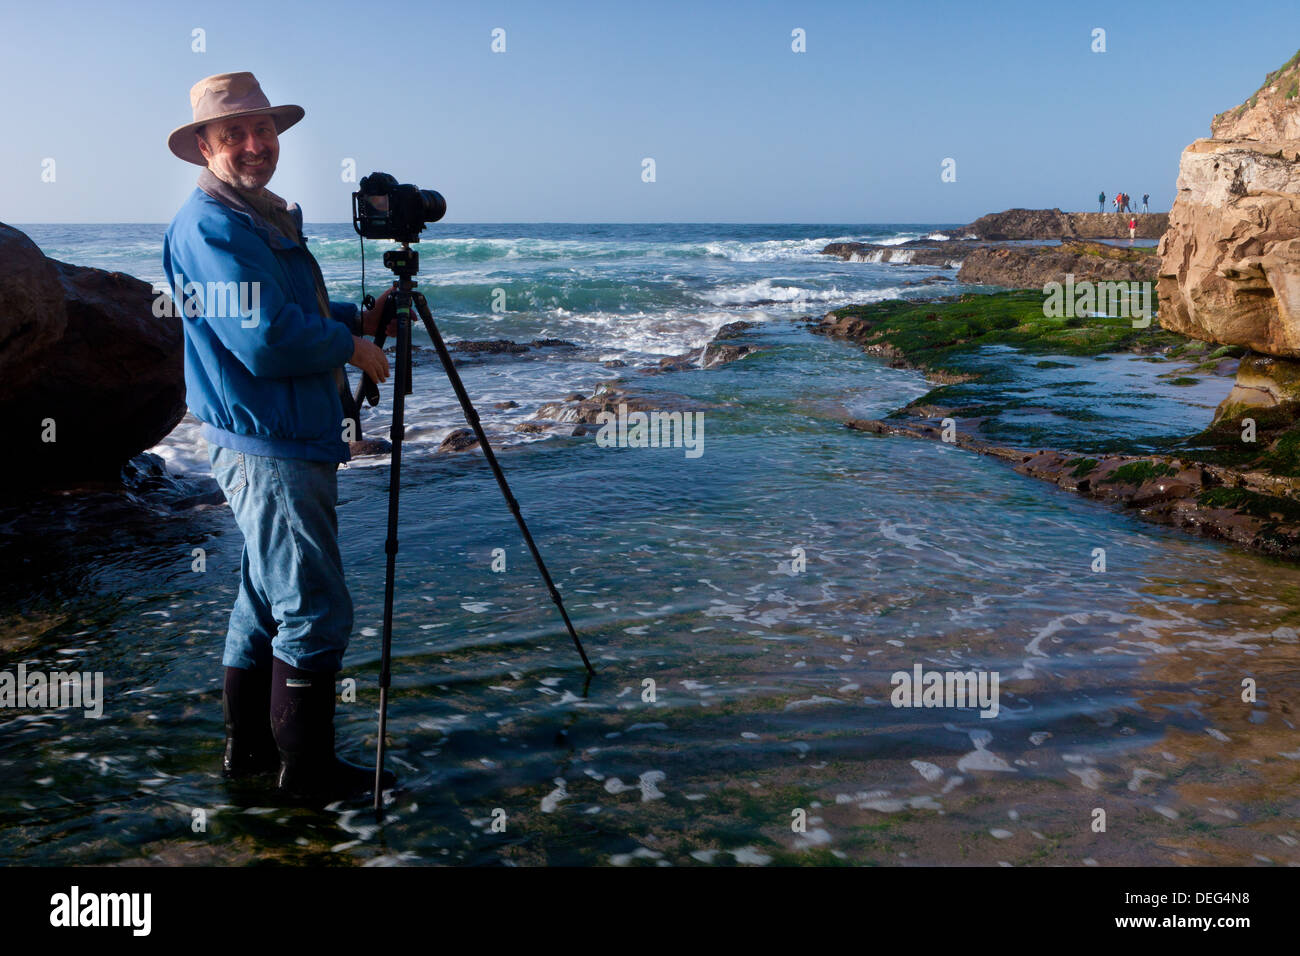 Frans Lanting, photographe au National Geographic, au travail sur la côte de Californie. Banque D'Images